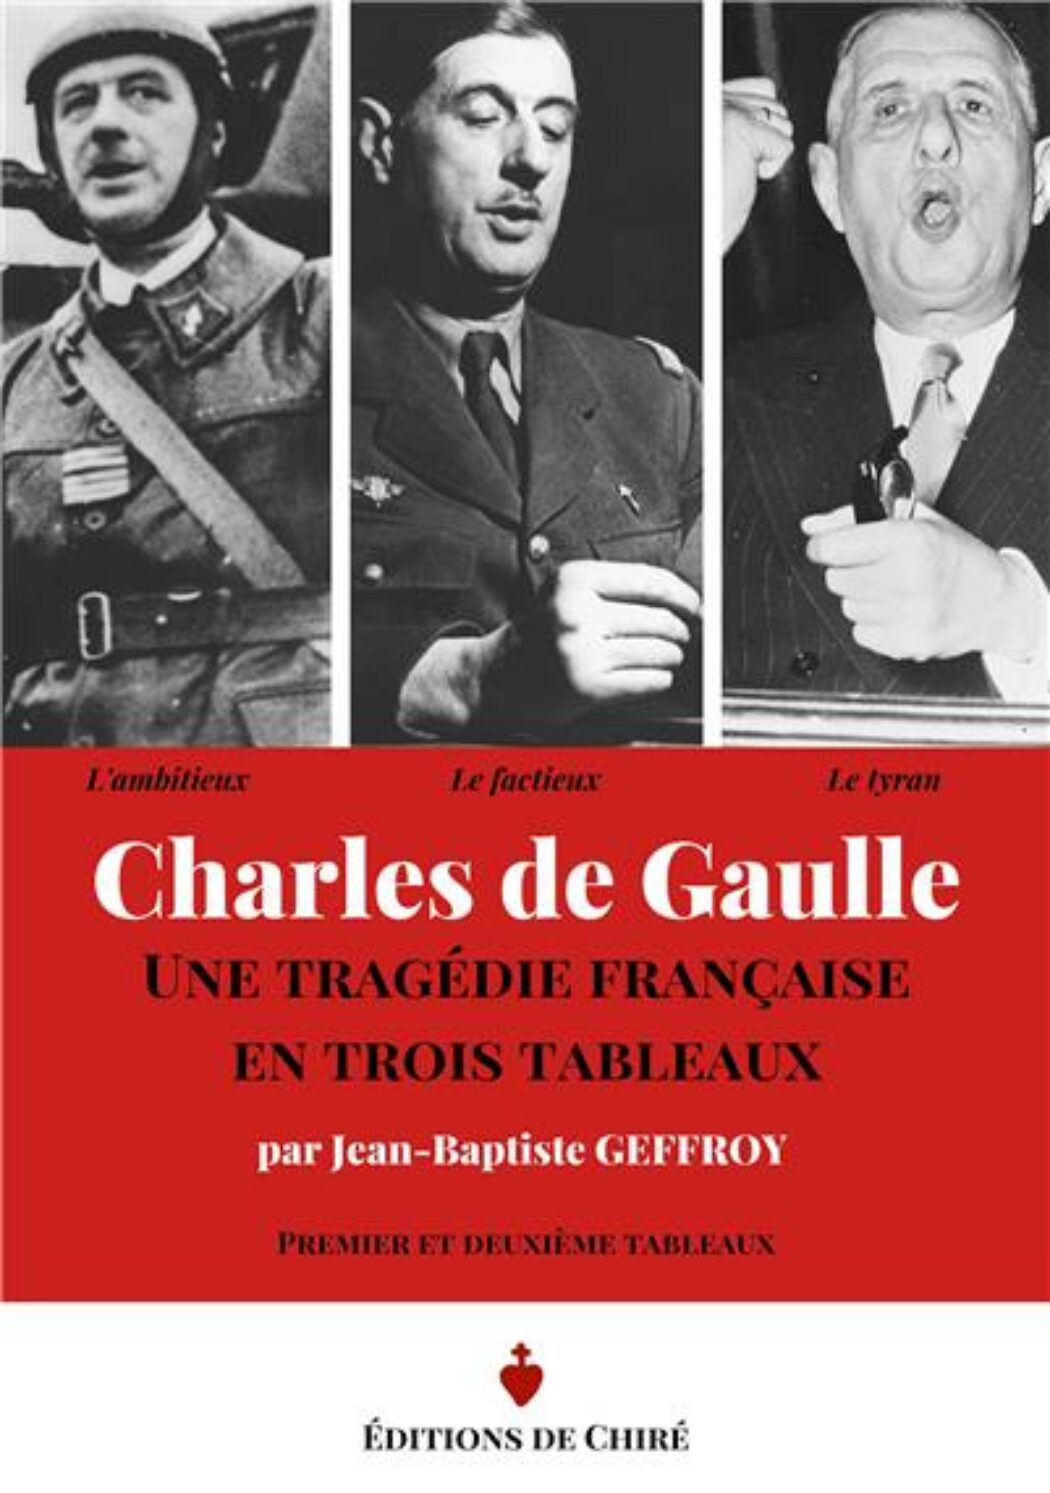 Une certaine idée de De Gaulle